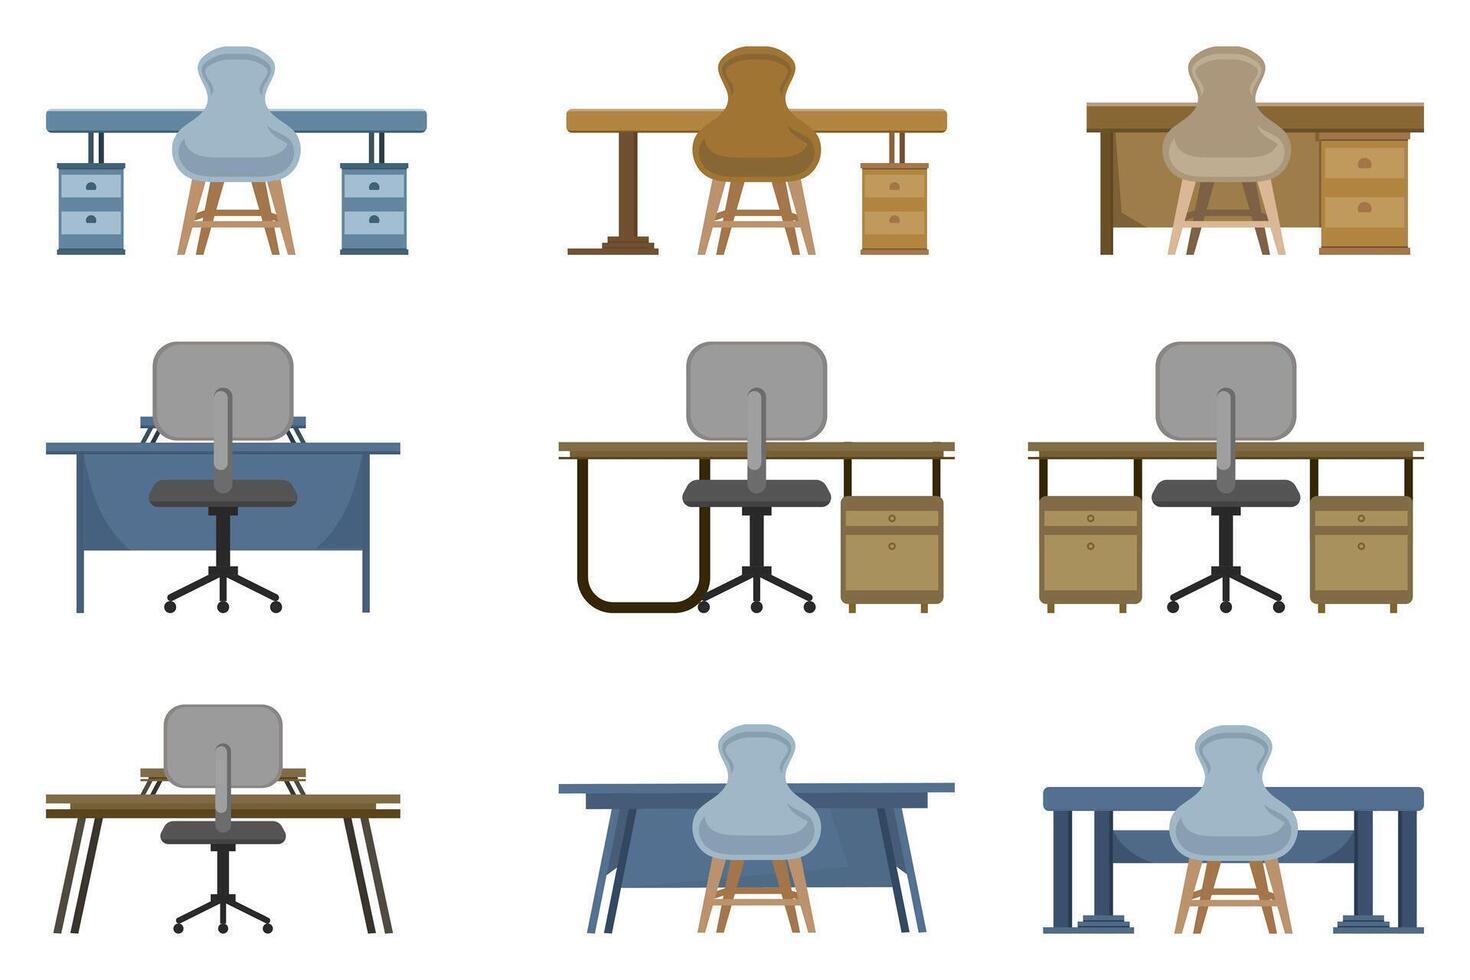 anders Tabelle und Stuhl setzt mit ein minimalistisch Stil. jeder einstellen Eigenschaften ein einzigartig Kombination von Tabellen und Stühle mit anders Designs und Farben, Abdeckung ein Vielfalt von Stile und Funktionen. vektor